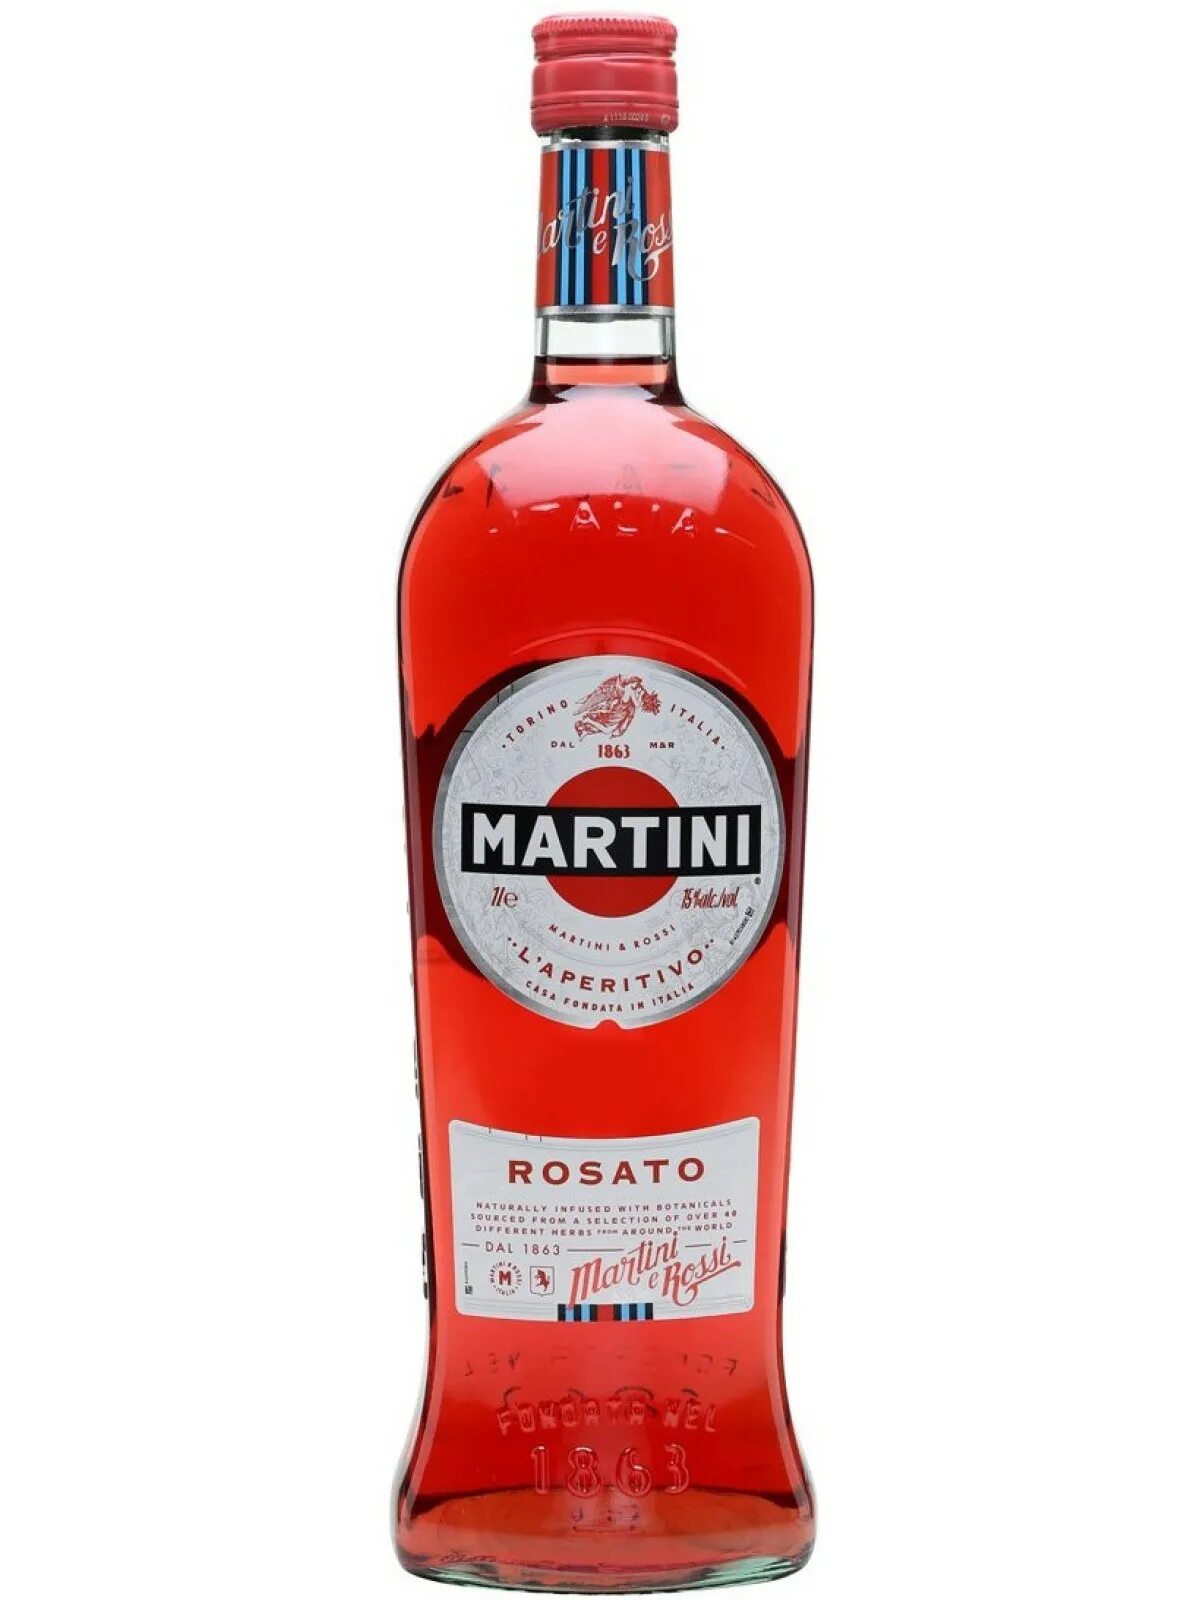 Вермут "Martini" Rosato, 1 л. Вермут мартини Розато розовый. Мартини Бьянко красное. Мартини Фиерро. Красны попит